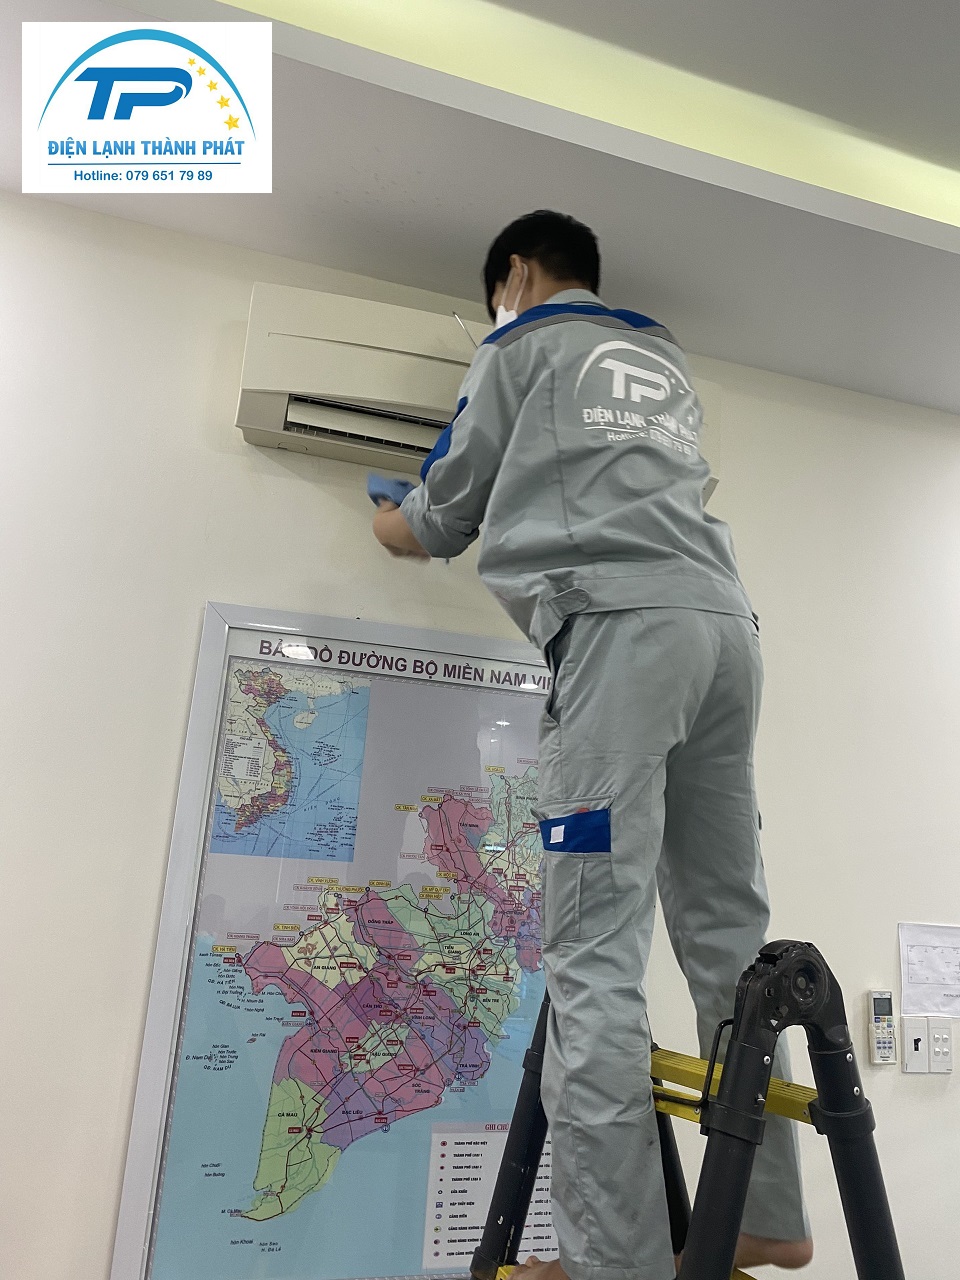 Quy trình rõ ràng, minh bạch dịch vụ vệ sinh máy lạnh tại Thành Phát